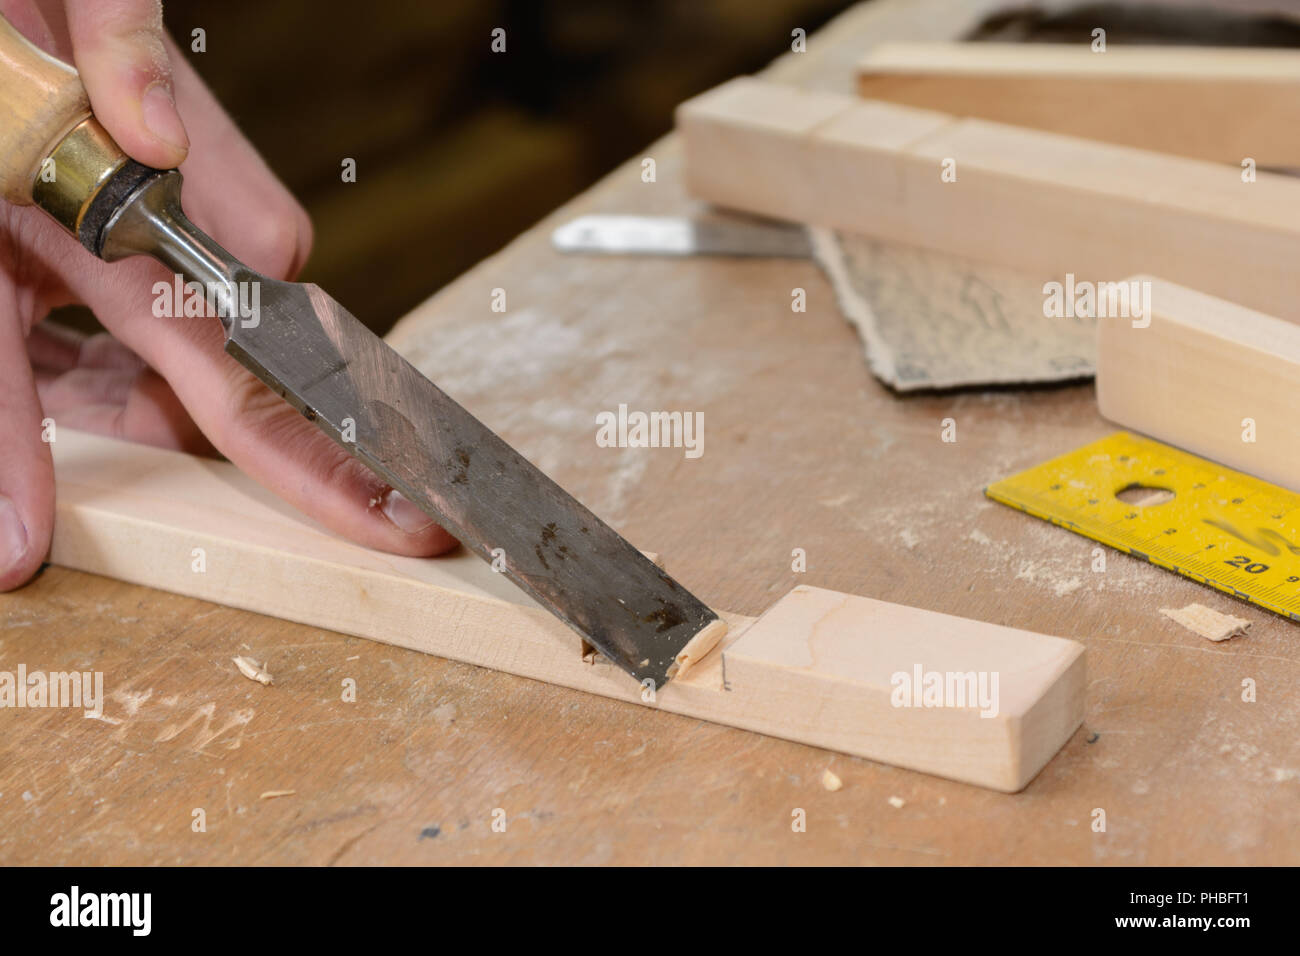 Ouvrier travaillant les burins à outils en bois - gros plan Banque D'Images